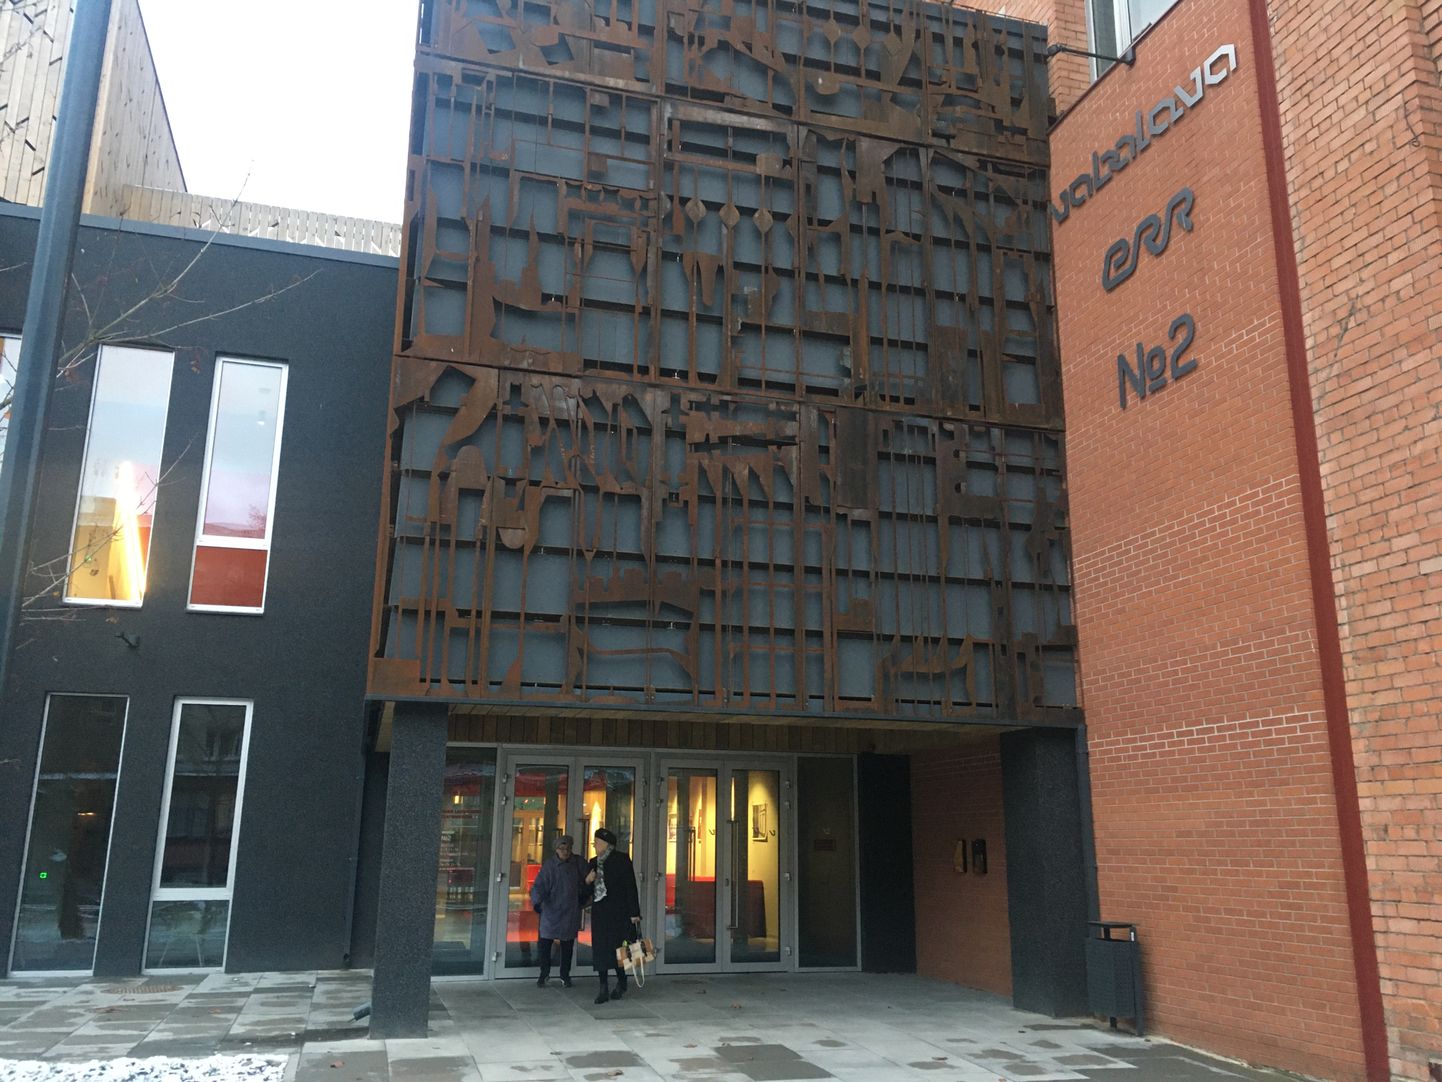 Нарвский театральный центр "Свободная сцена" открылся на улице Линда в декабре 2018 года.